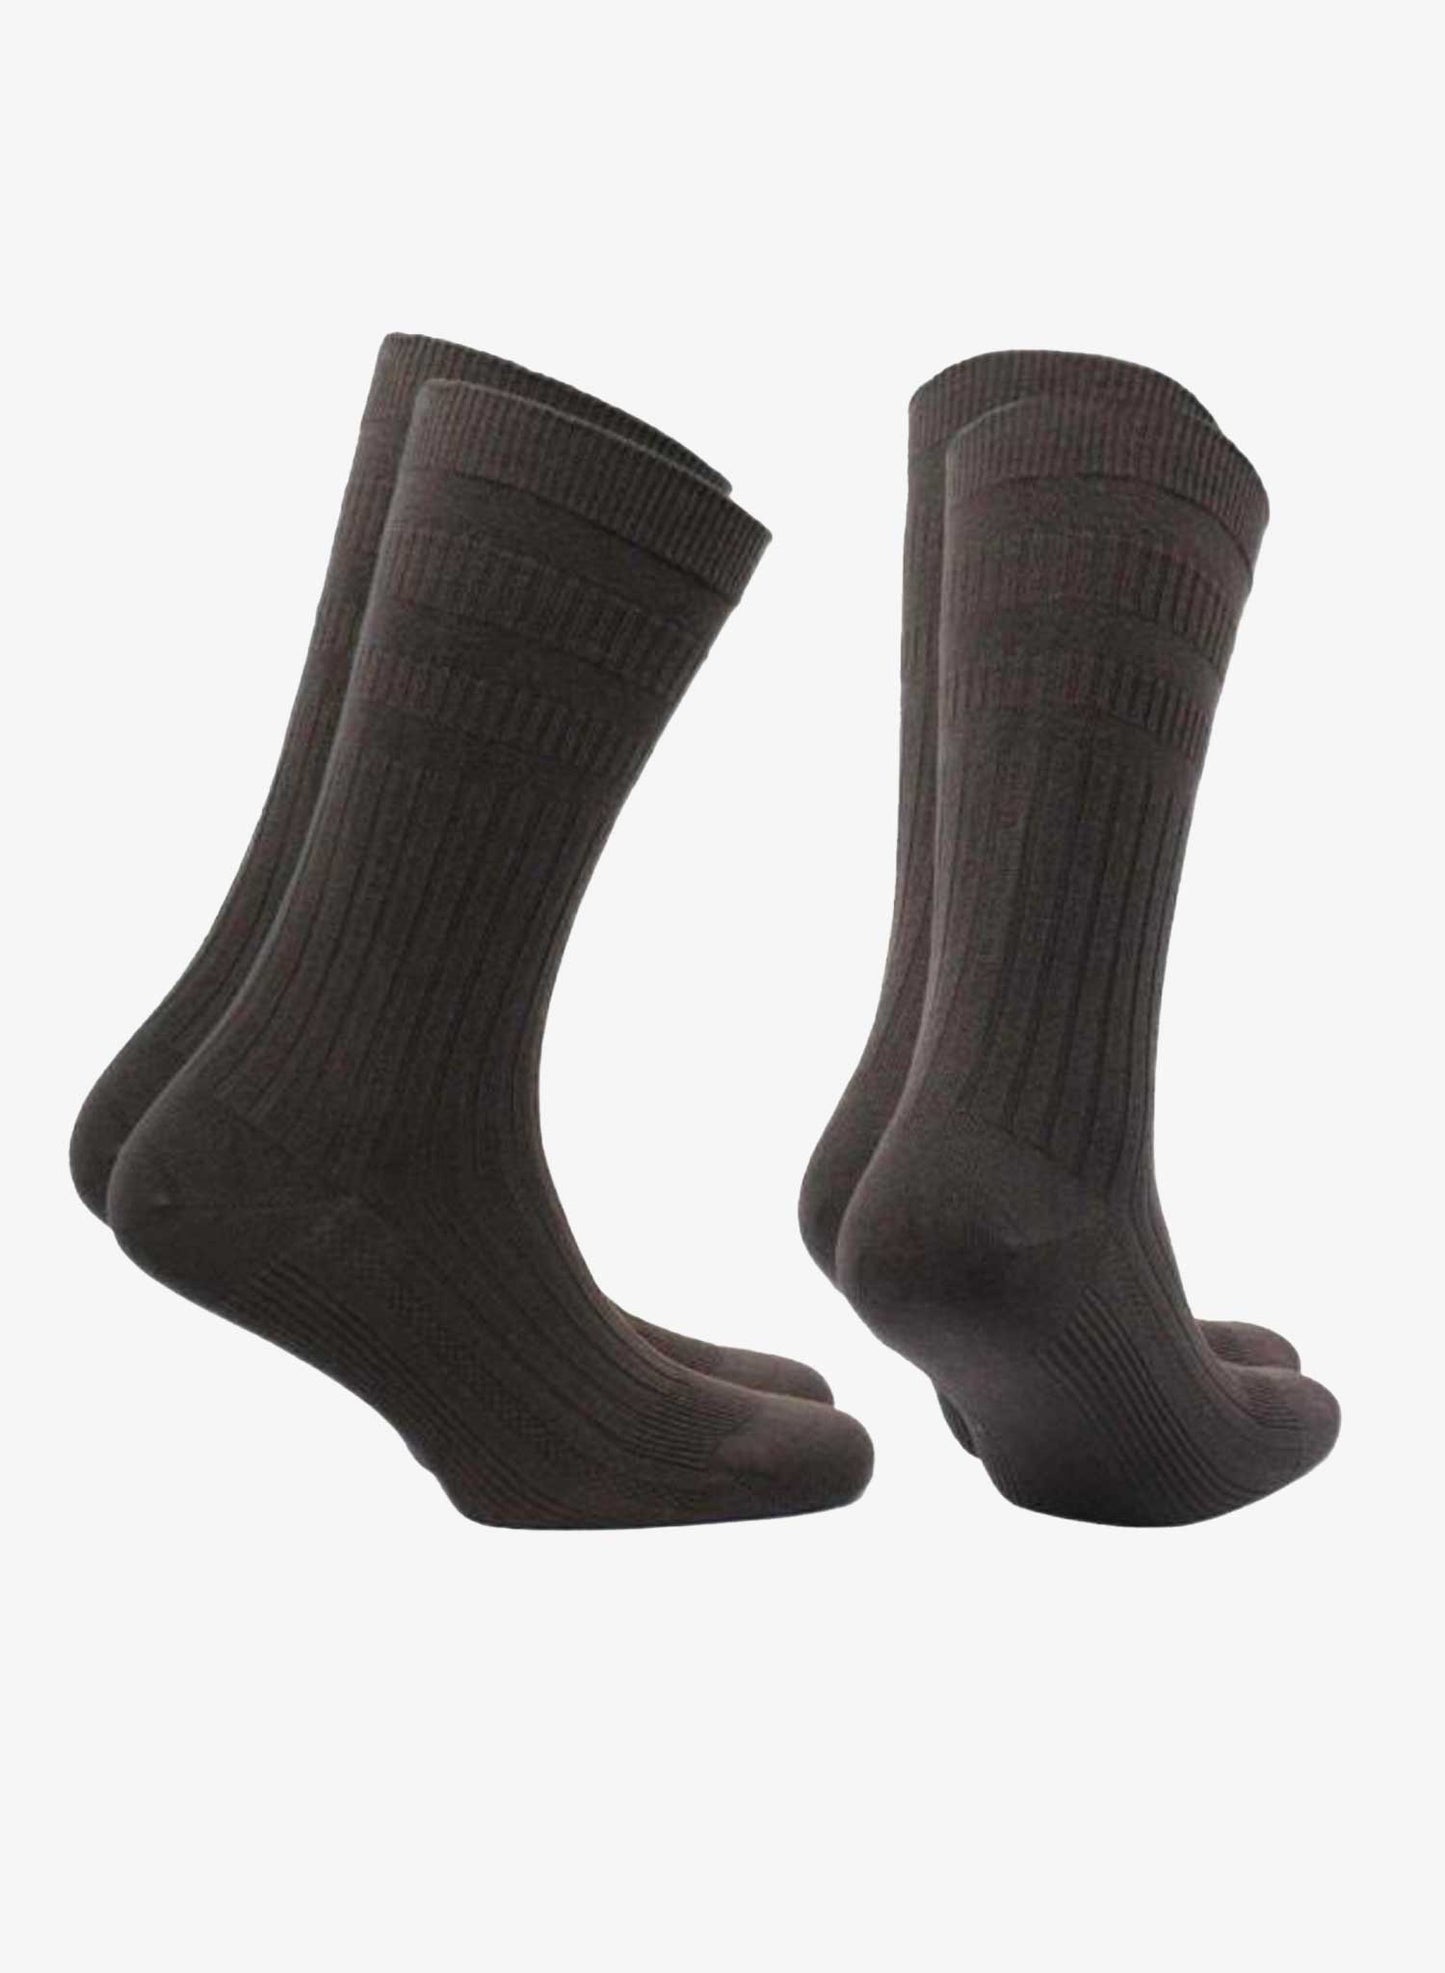 Norfolk Socks Joseph 2 pk - Charcoal